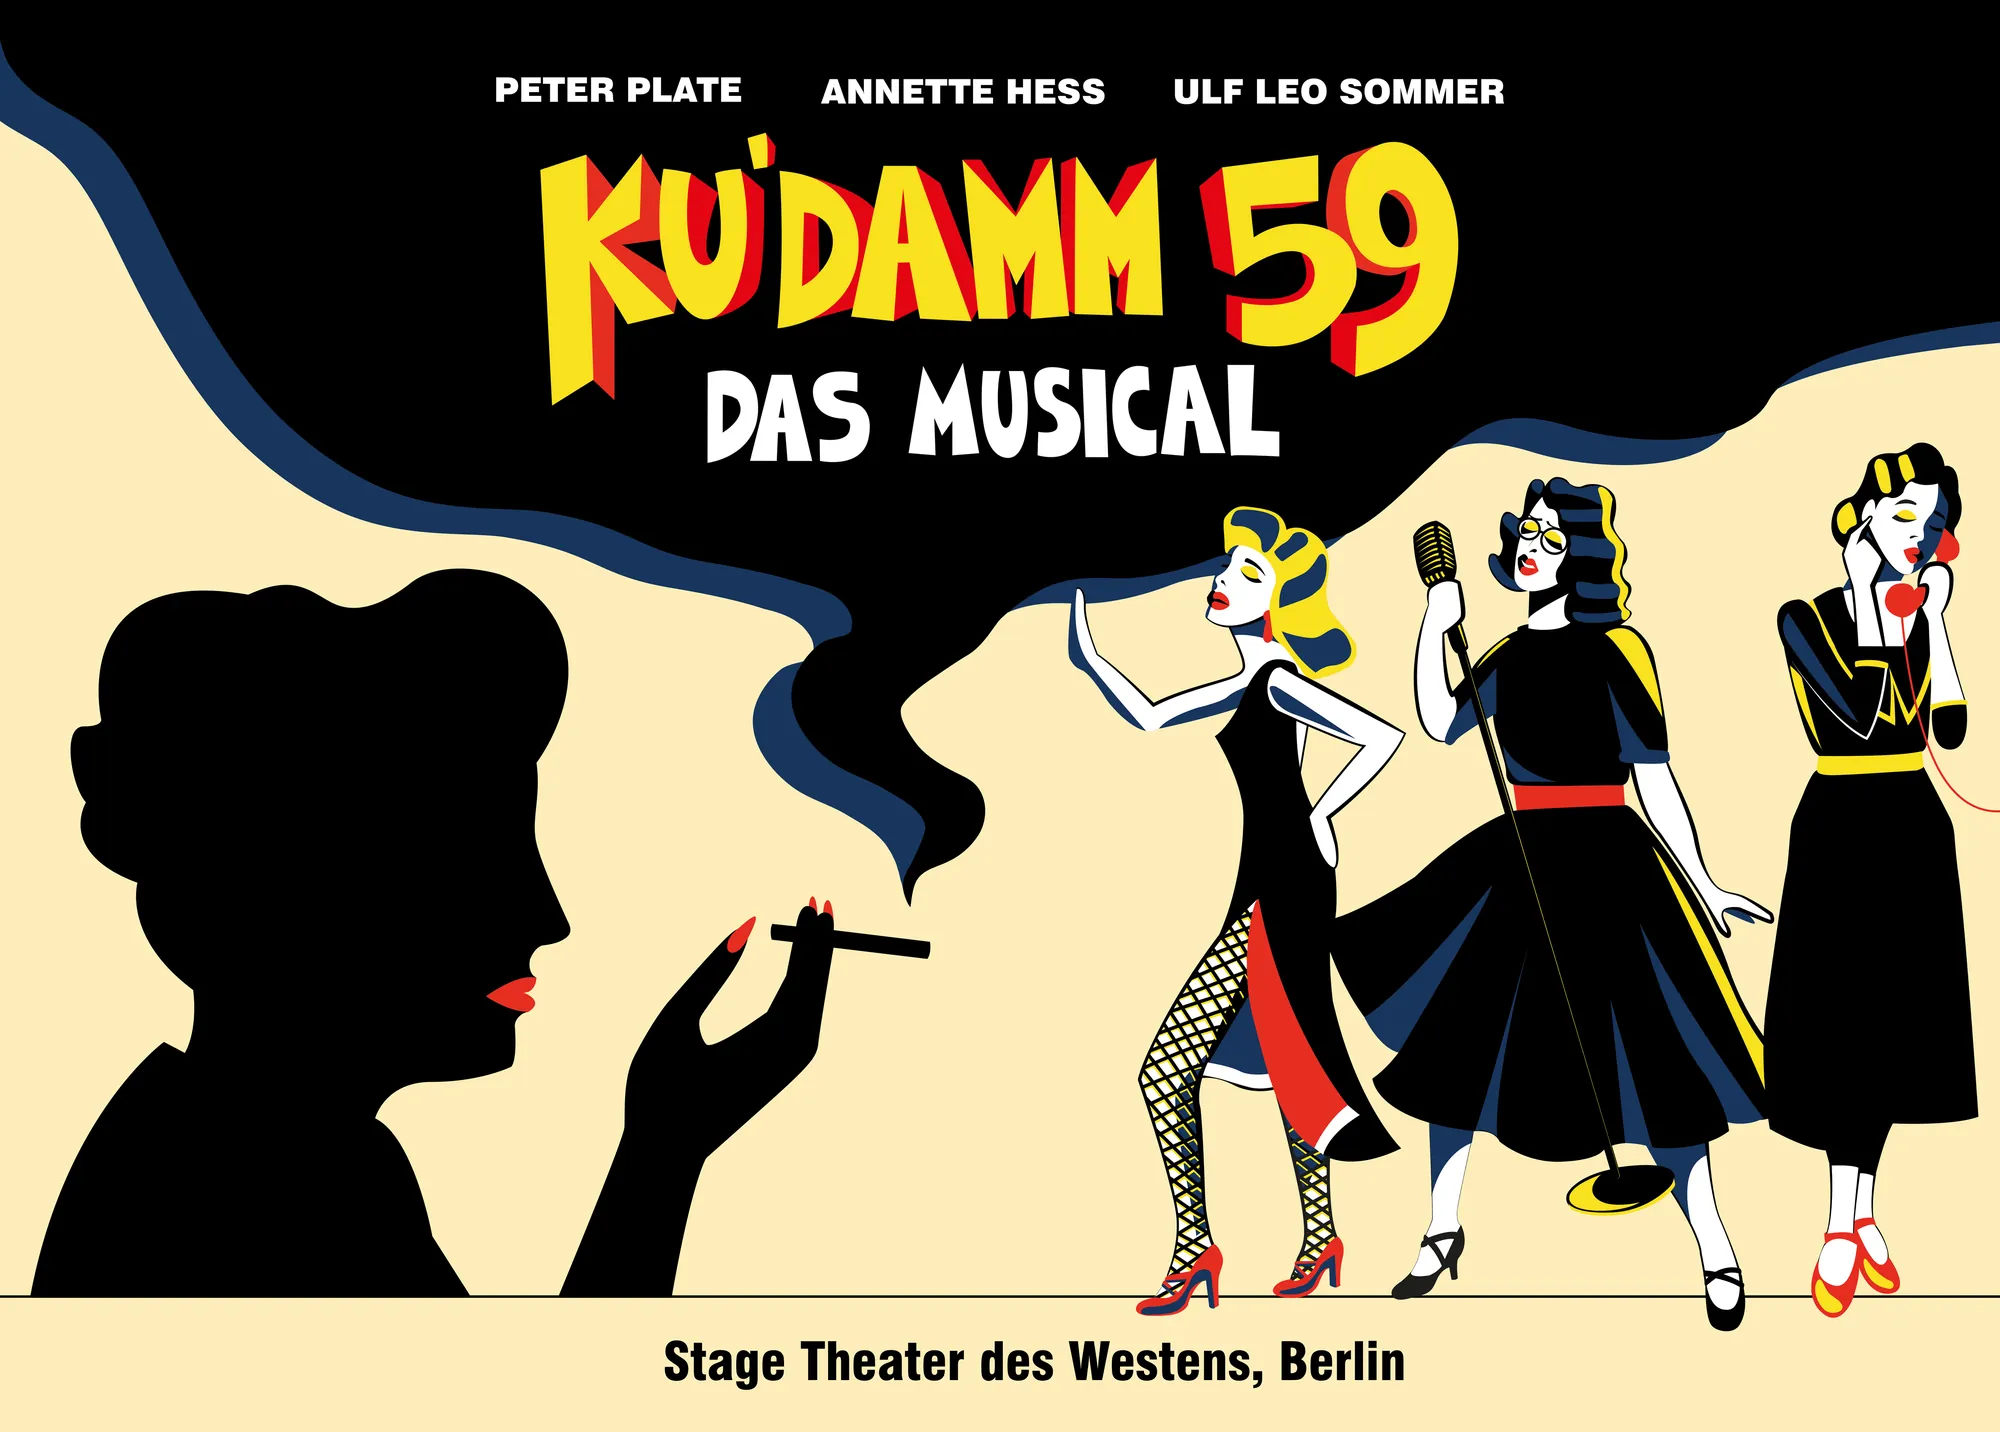 Ku'damm 59 Musical mit Hotel, Key Visual des Musicals (quer)